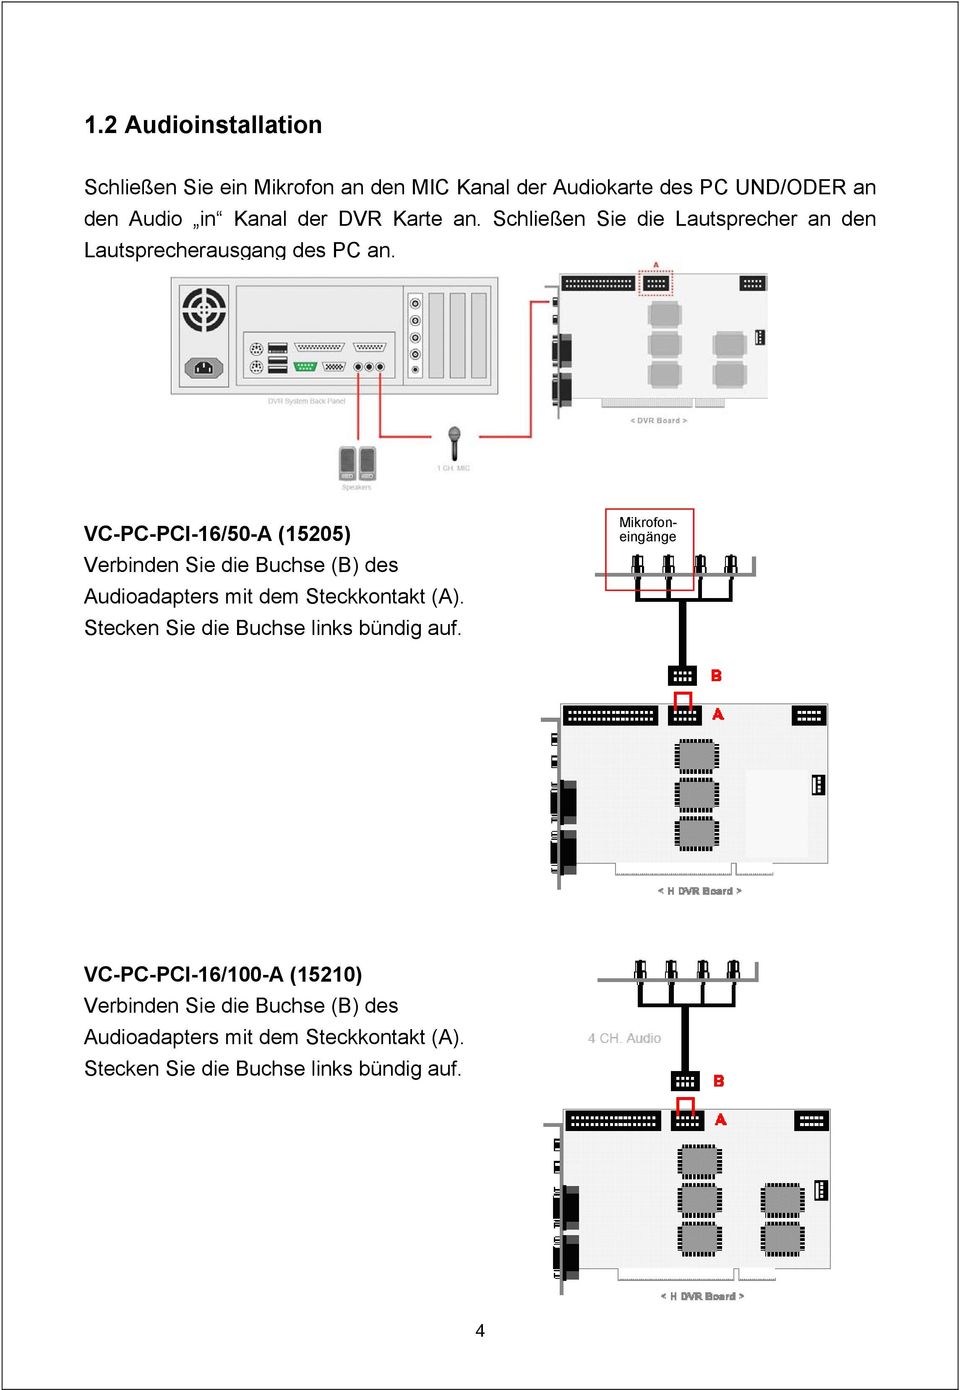 VC-PC-PCI-16/50-A (15205) Verbinden Sie die Buchse (B) des Audioadapters mit dem Steckkontakt (A).